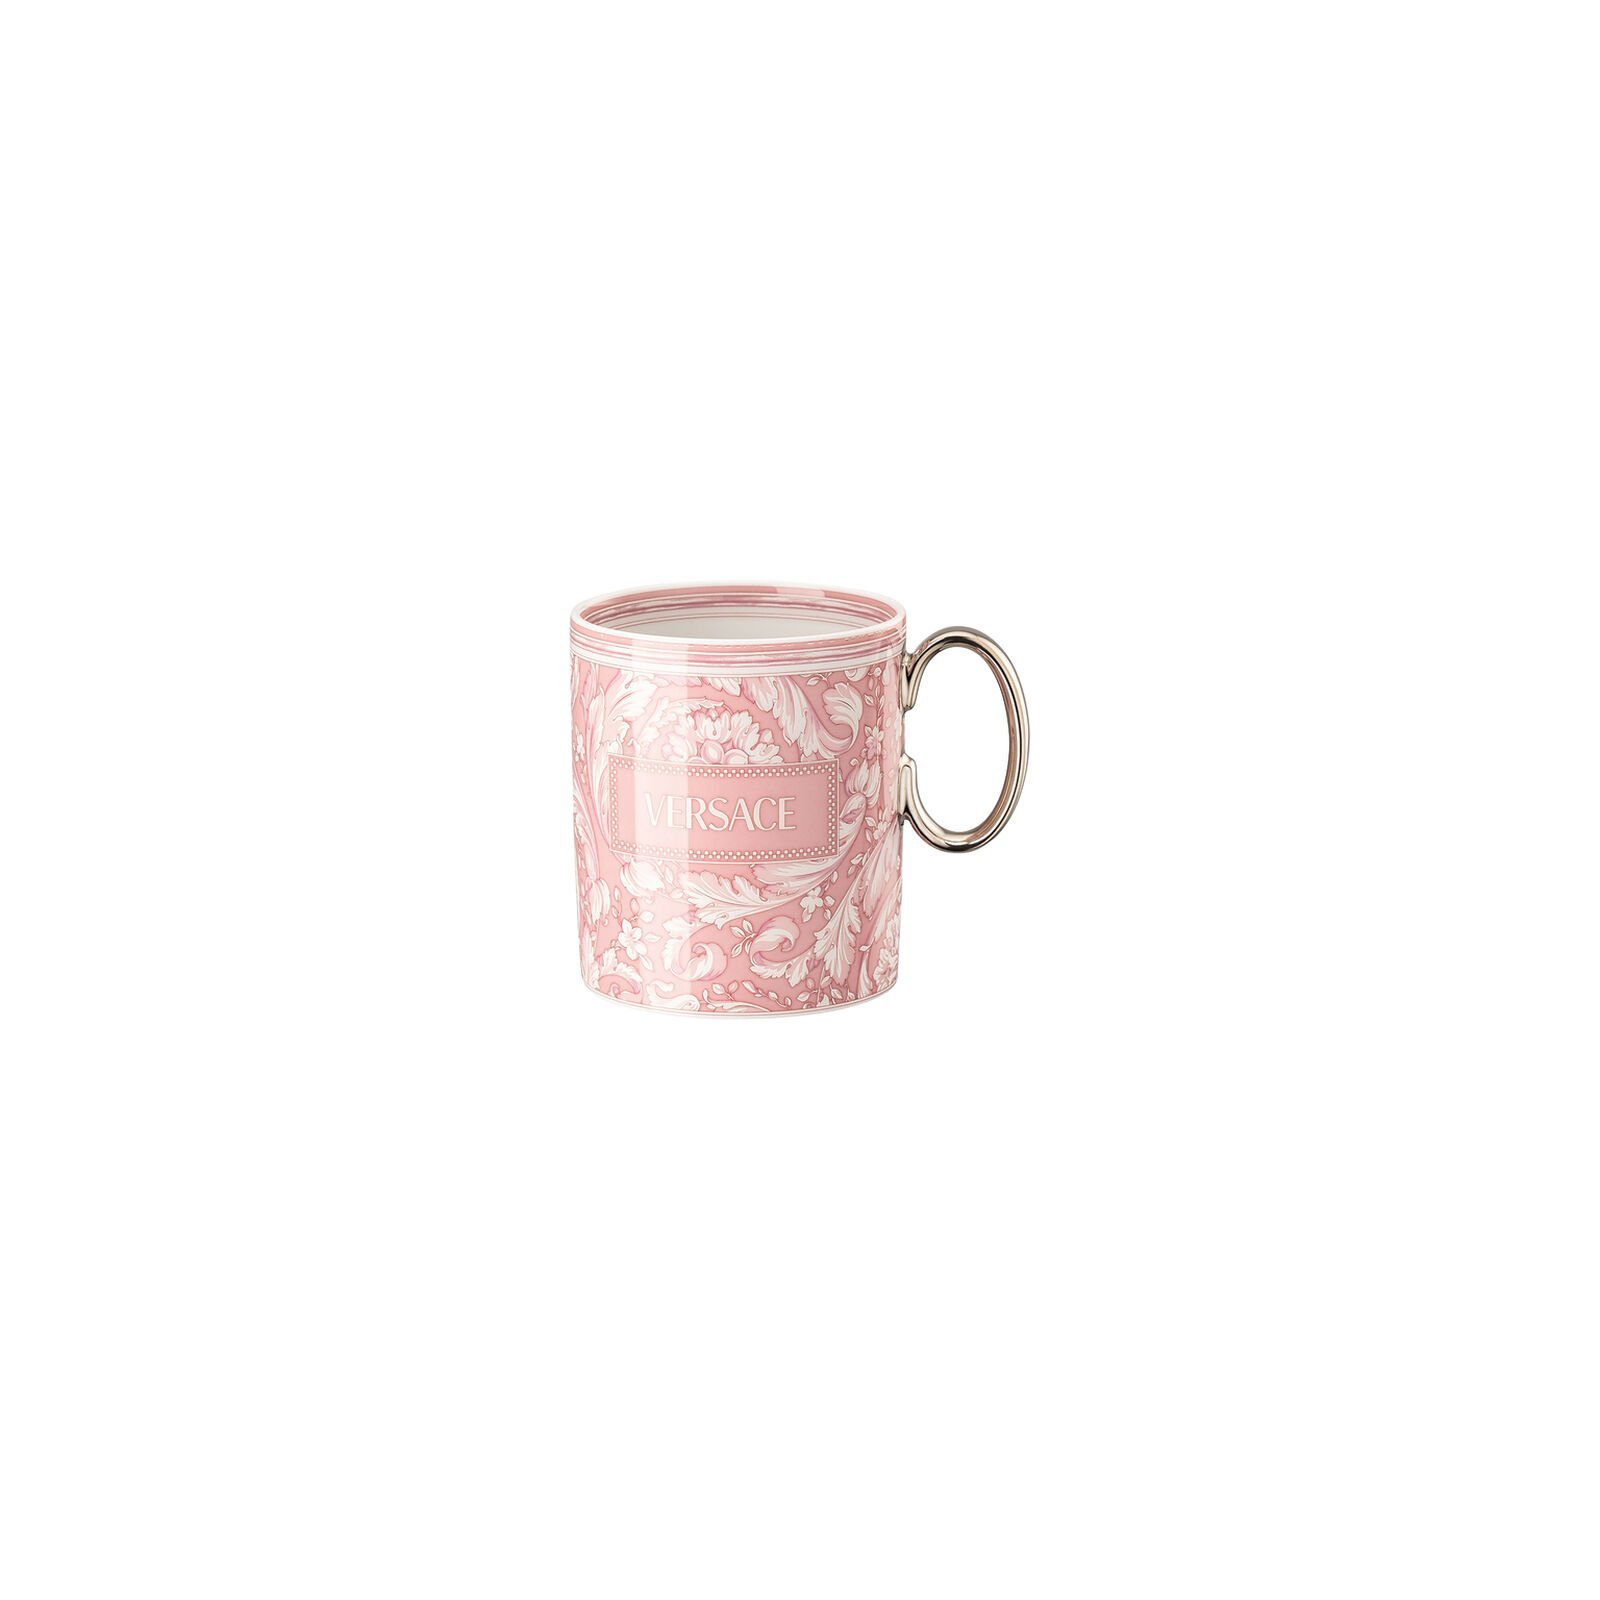 Versace Rosenthal Barocco Barocco Rose mug with handle